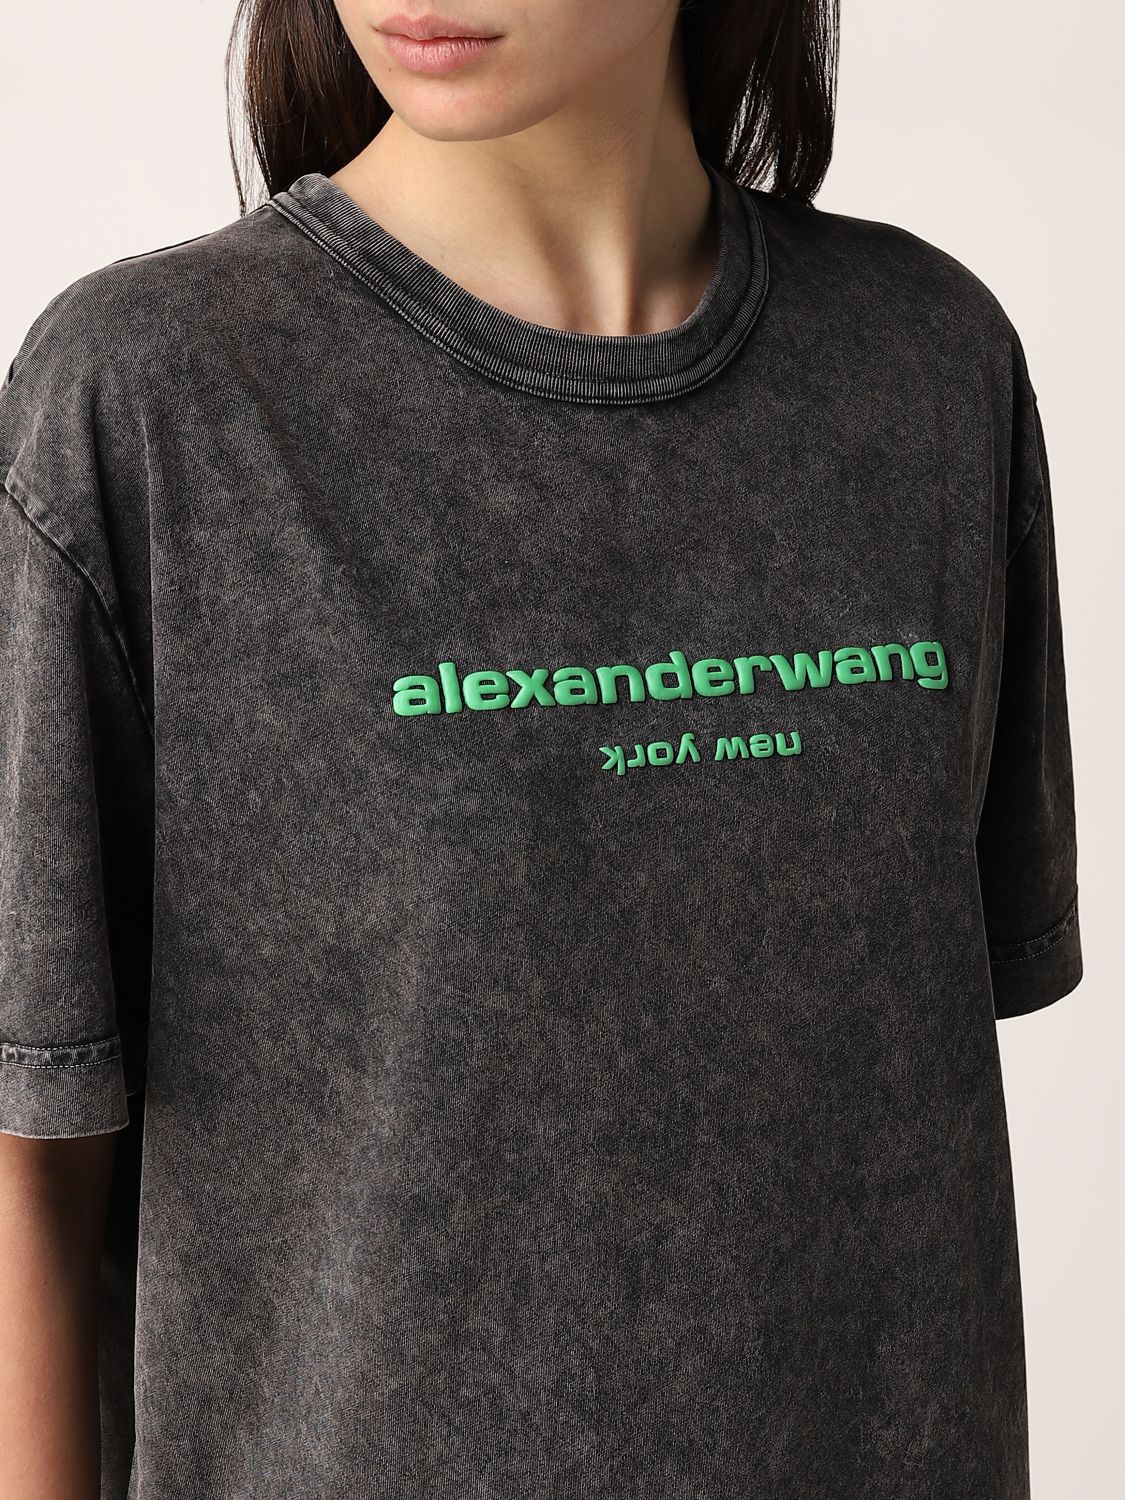 ALEXANDER WANG: cotton t-shirt with logo - Green | Alexander Wang t ...